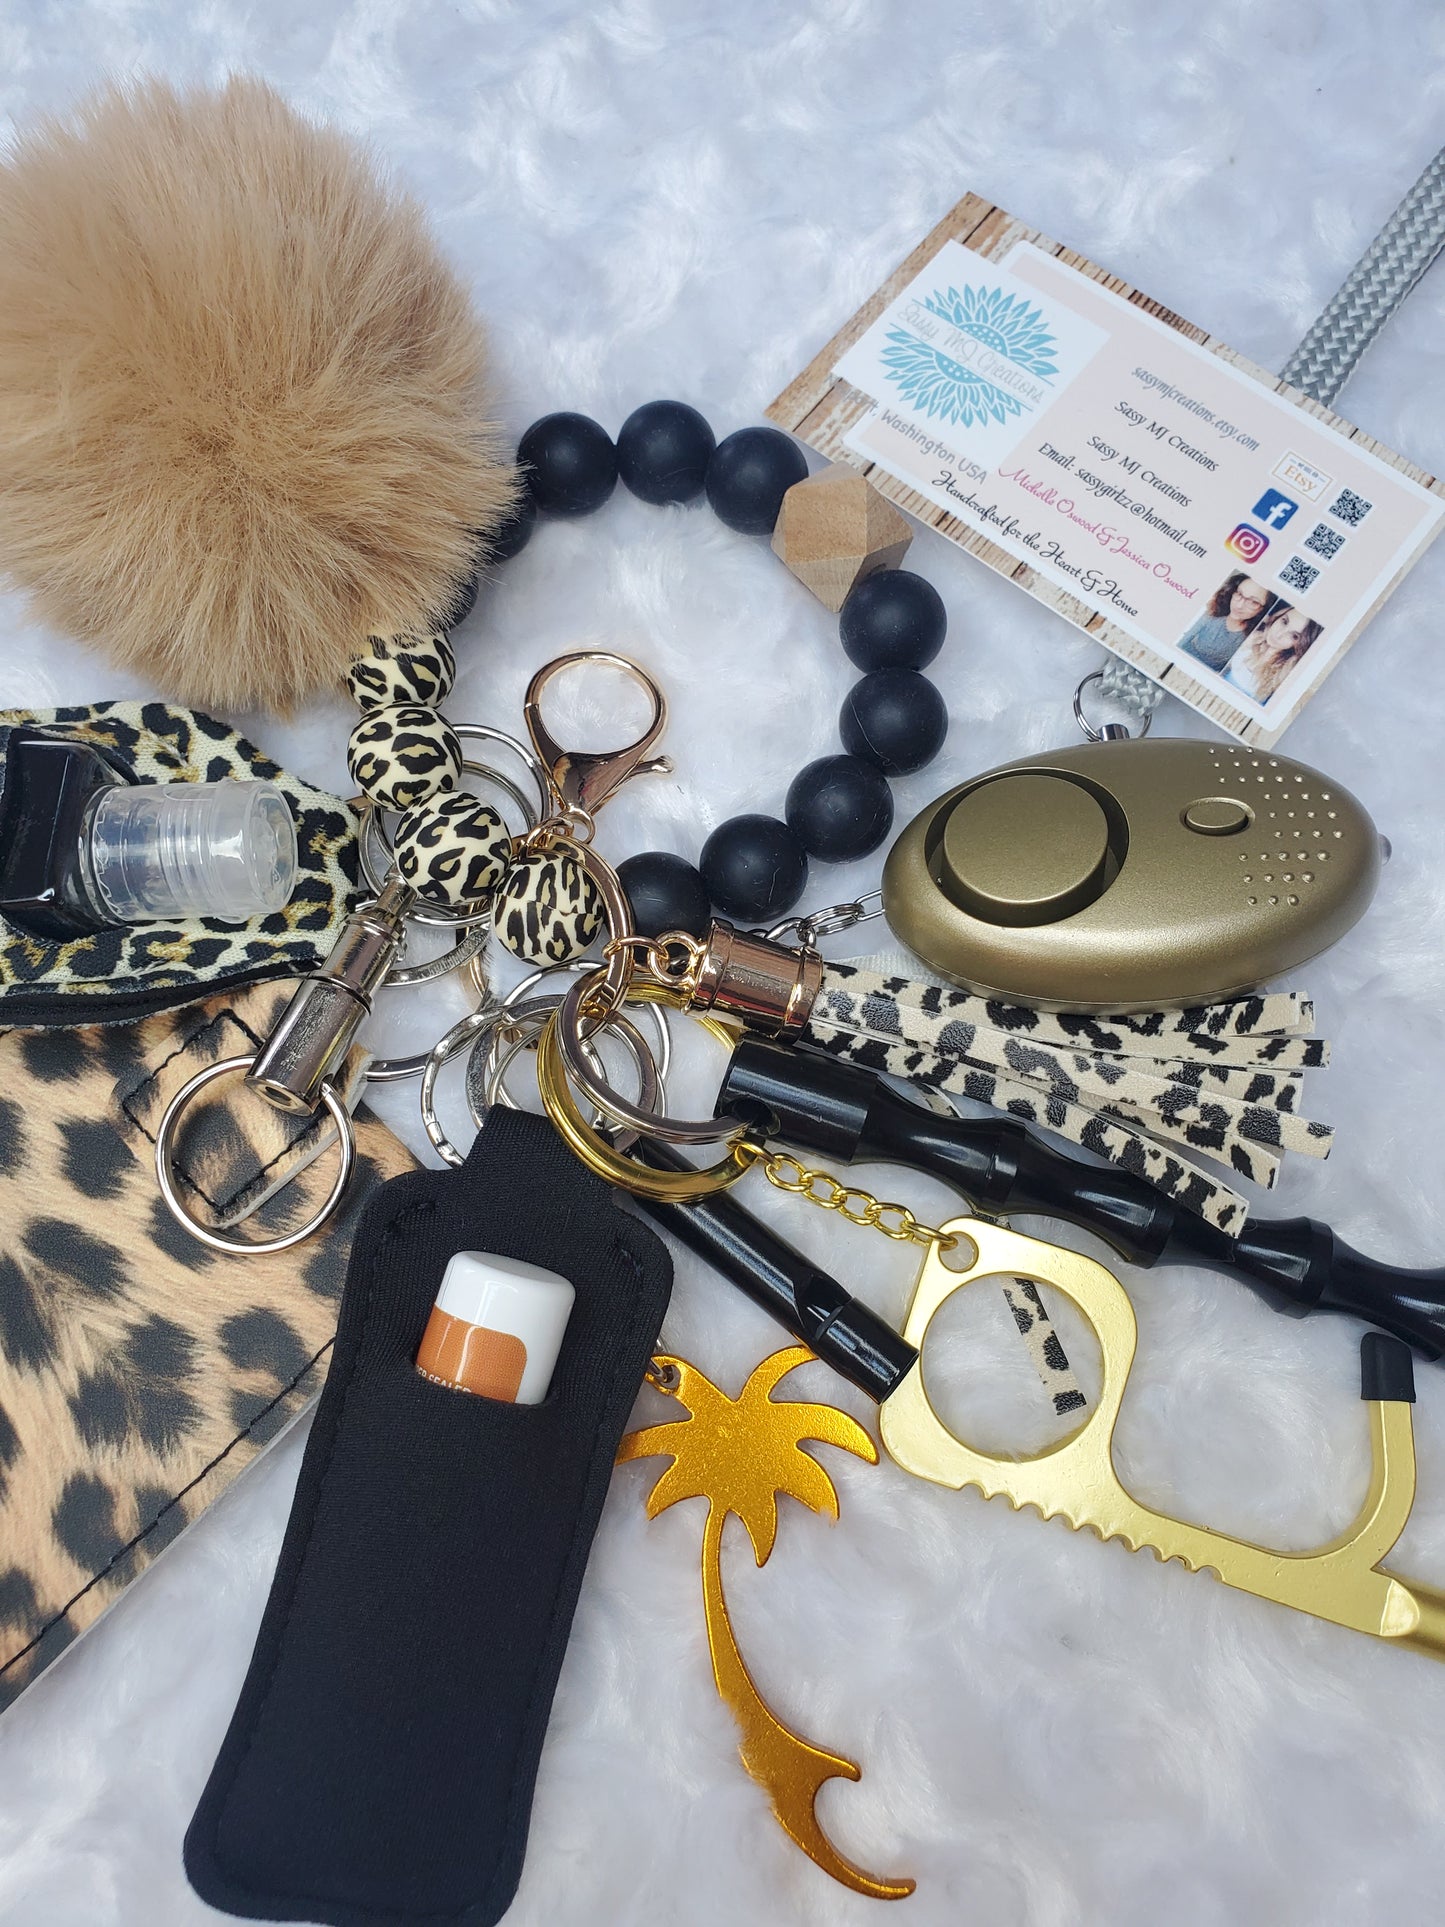 Beaded Bracelet (Leopard) Safety Keychain Set-Personal Safety Kit 13 pc.